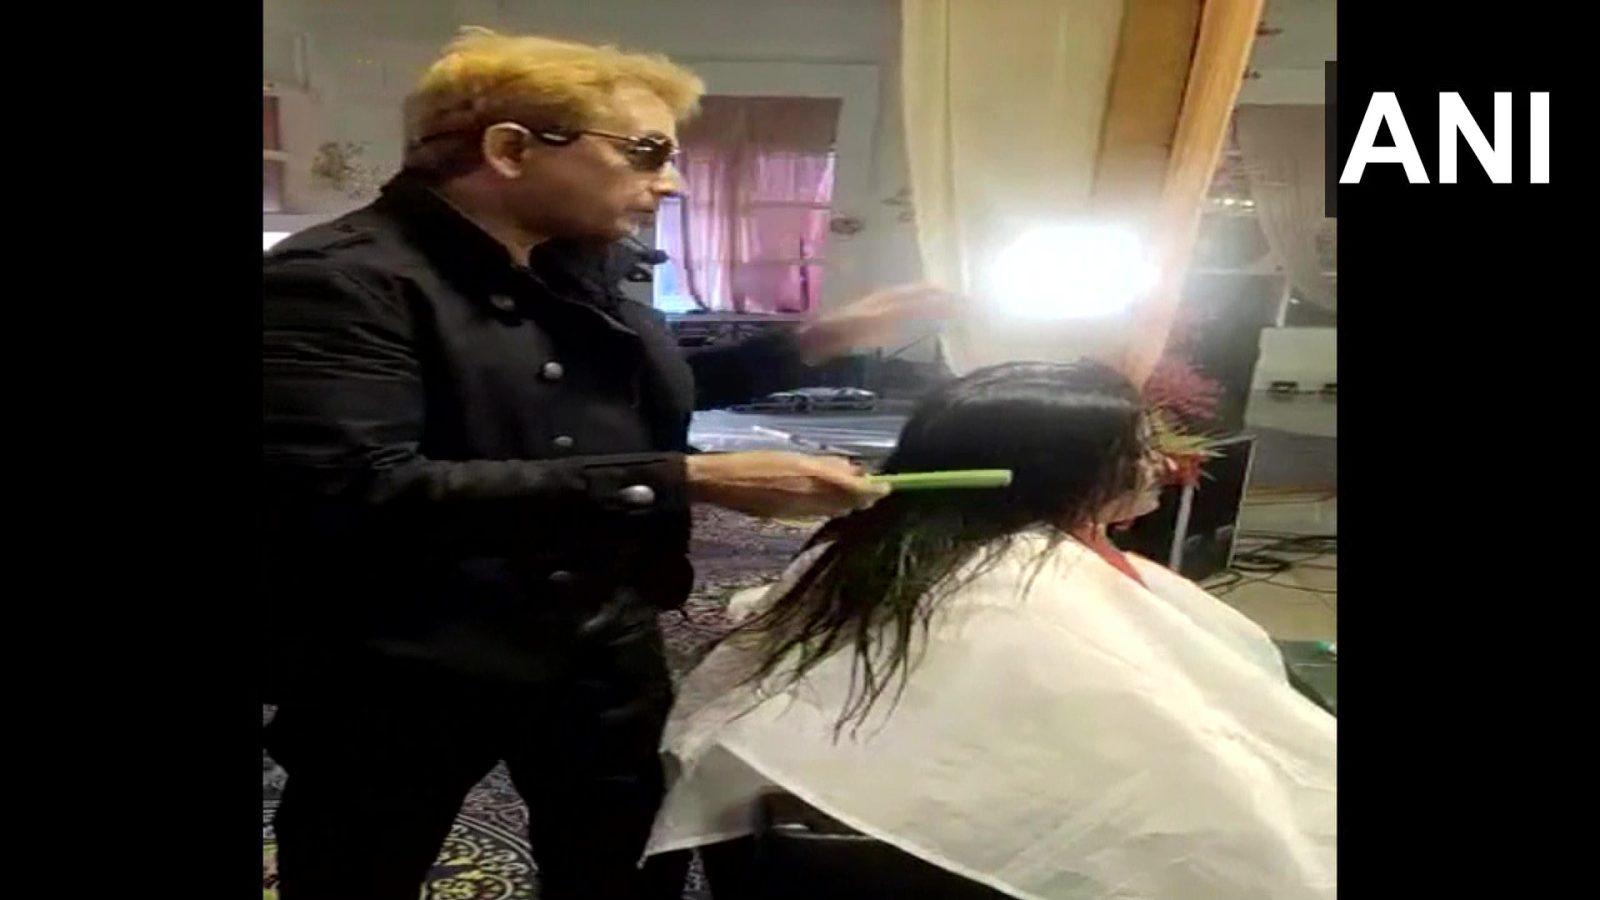 Viral Video: महिला के बालों में थूकना hairstylist Jawed Habib को पड़ा महंगा, NCW ने भेजा नोटिस, इस दिन पेश होने का आदेश